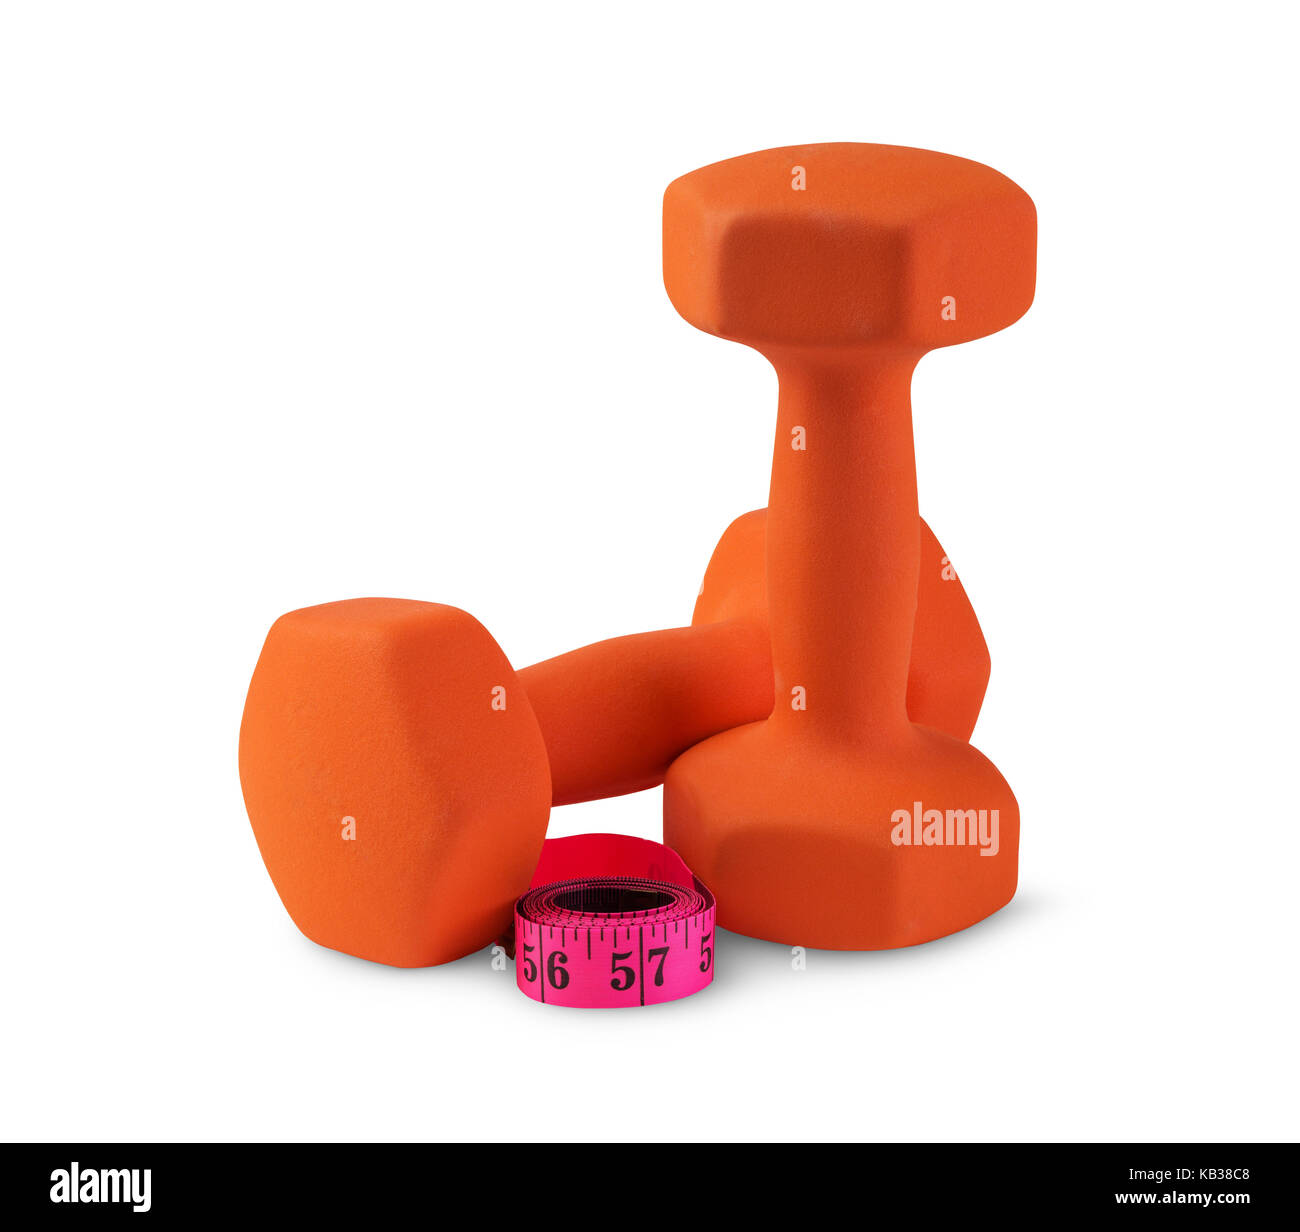 Zwei orange Kunststoff-beschichtete Trainingshanteln mit Maßband isoliert auf Weiss. Fitness und gesunde Lebensweise Gewicht Steuerungskonzept Stockfoto